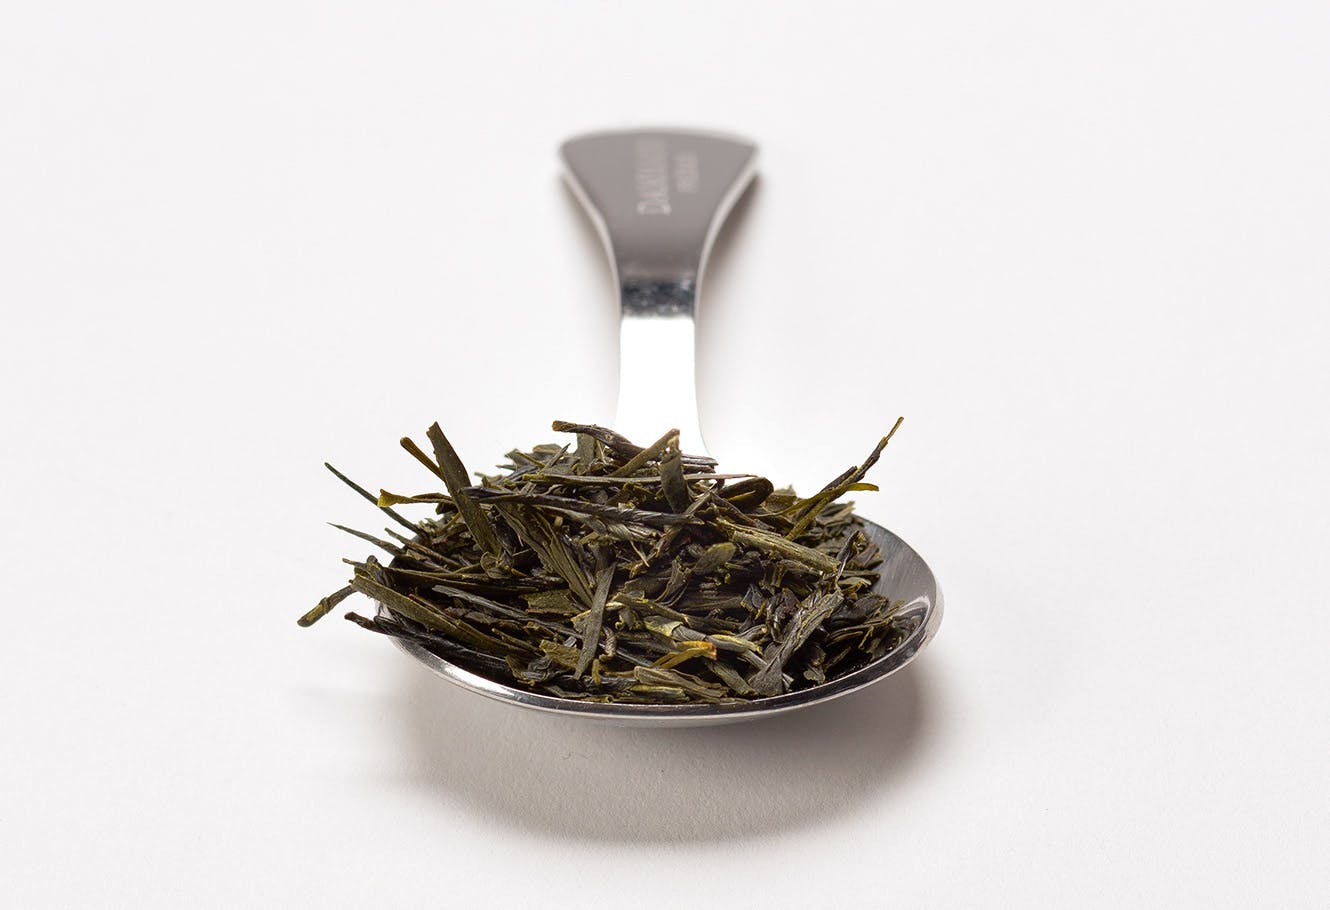 Cuillère à mesurer en acier inoxydable avec thé vert du Japon en vrac.